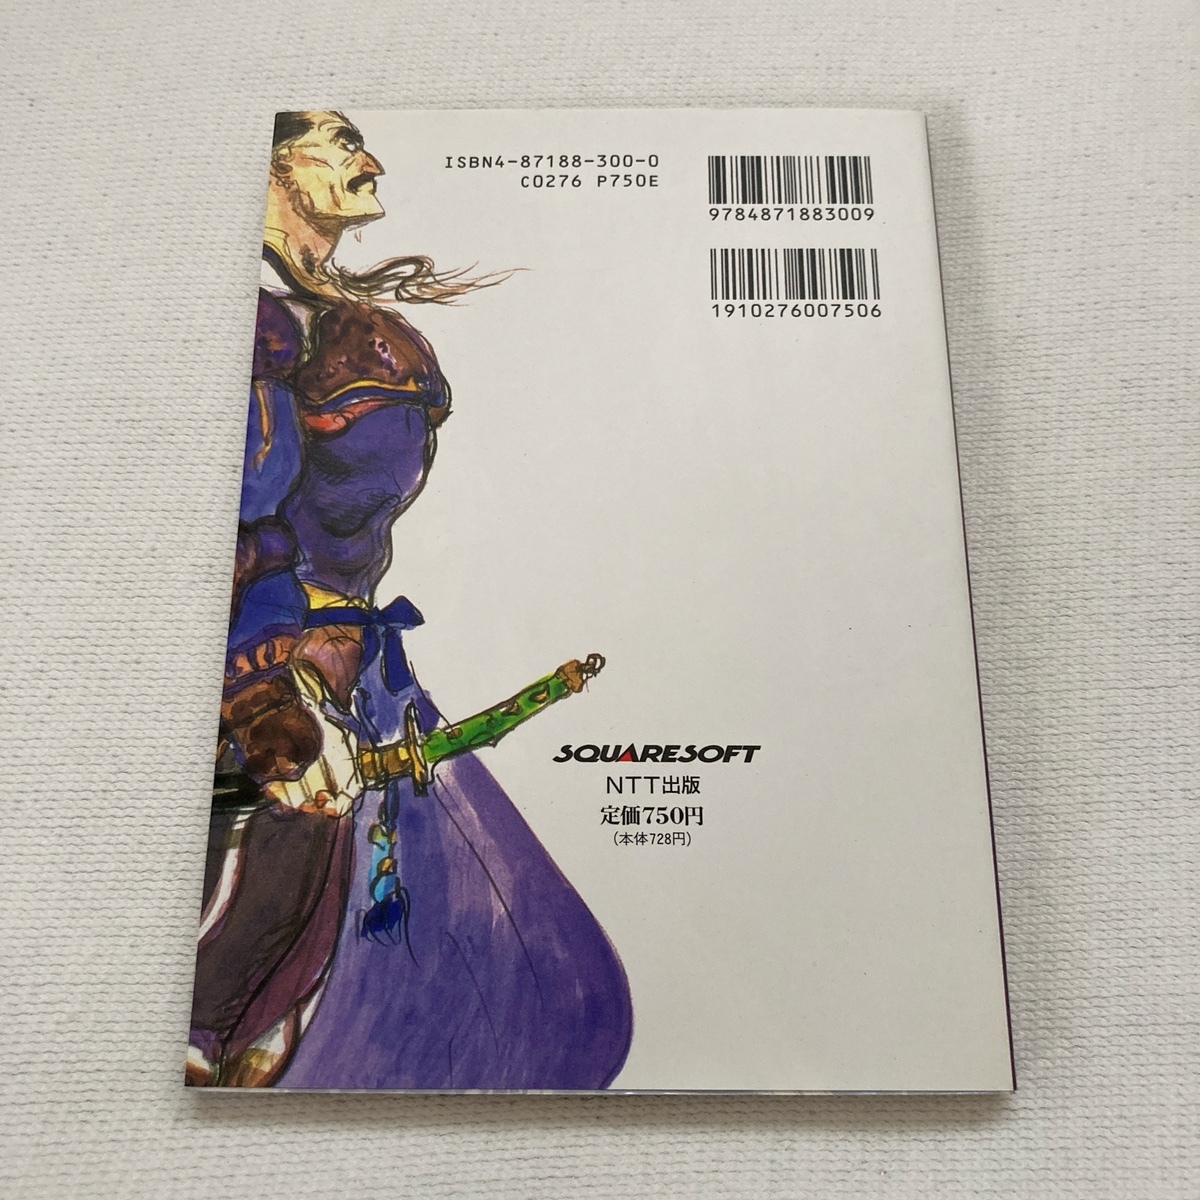  Super Famicom Final Fantasy VI гид все 3 шт. / установка материалы сборник / основа знания сборник / совершенно .. сборник / Final Fantasy FF6